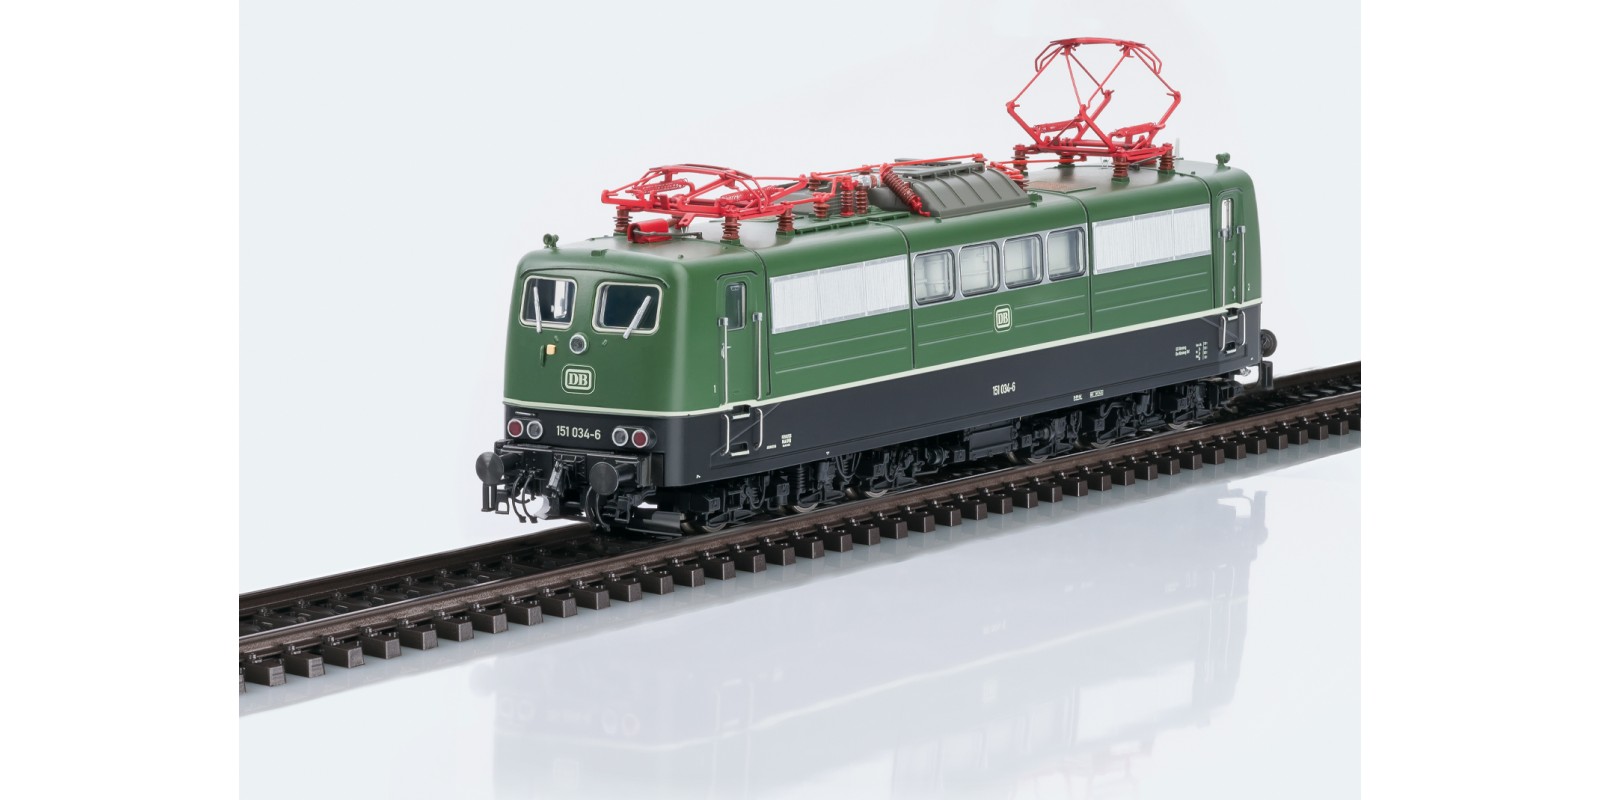 39132 Class 151 Electric Locomotive